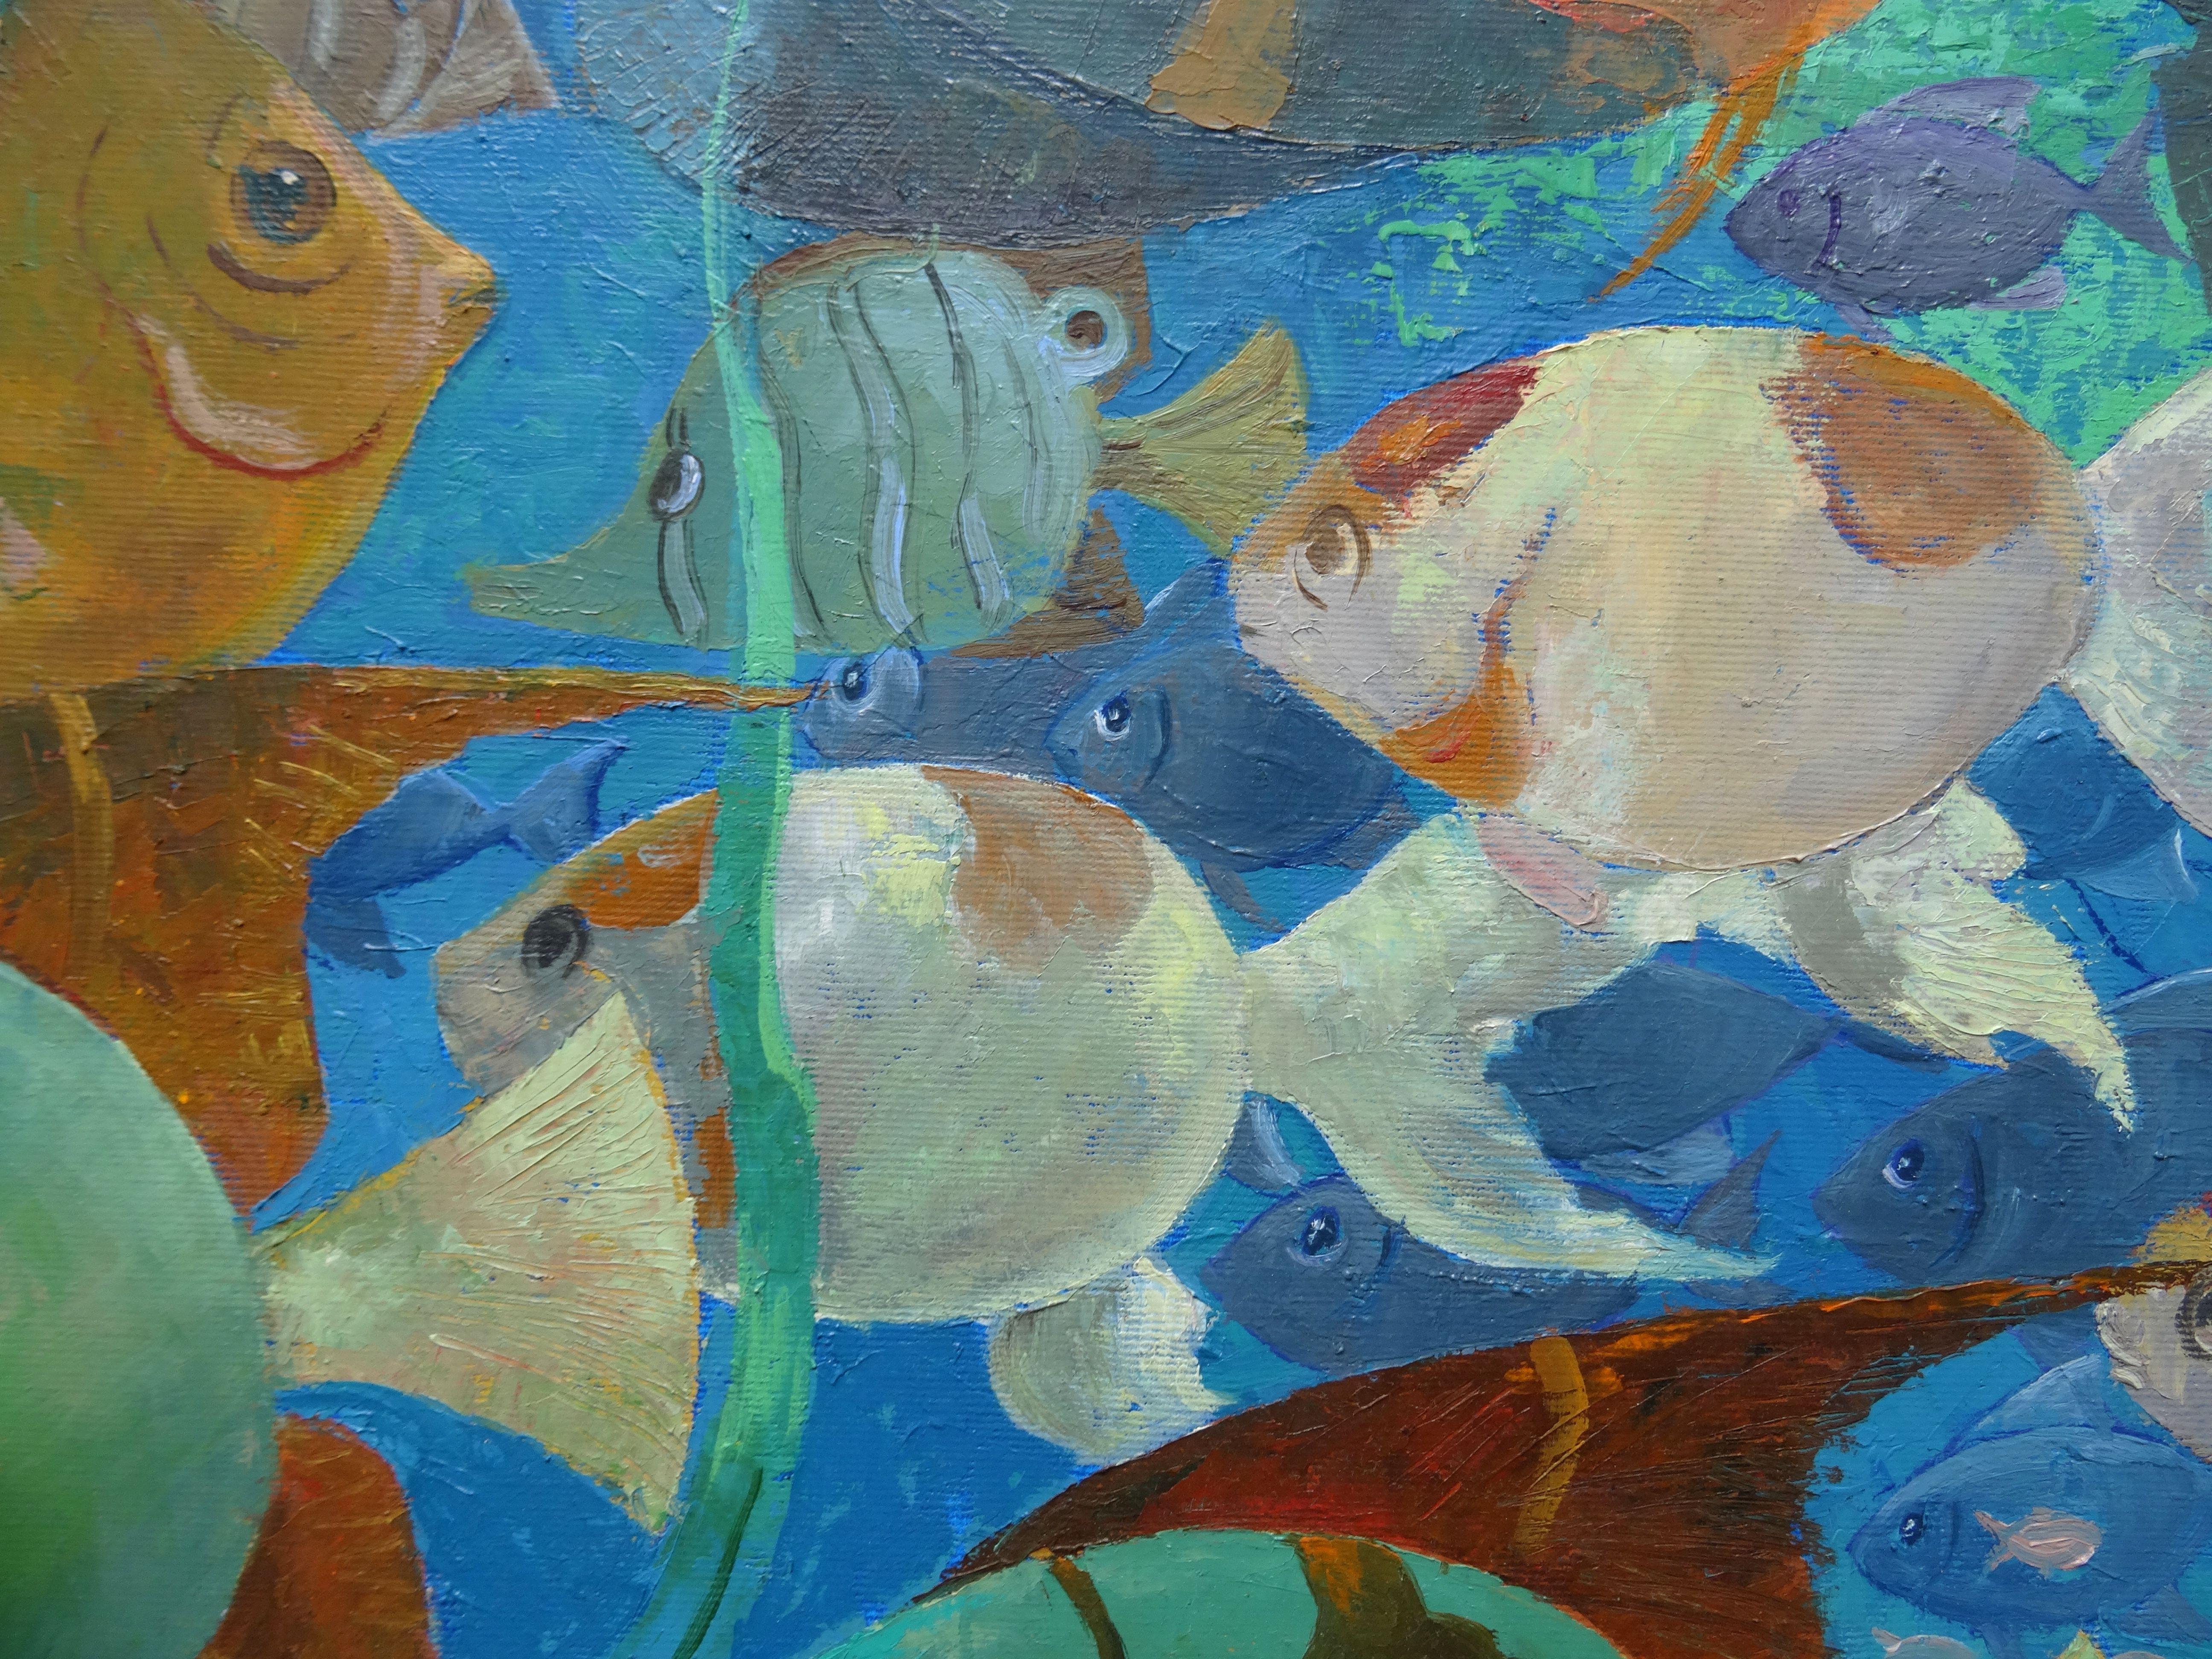 paintings of underwater scenes